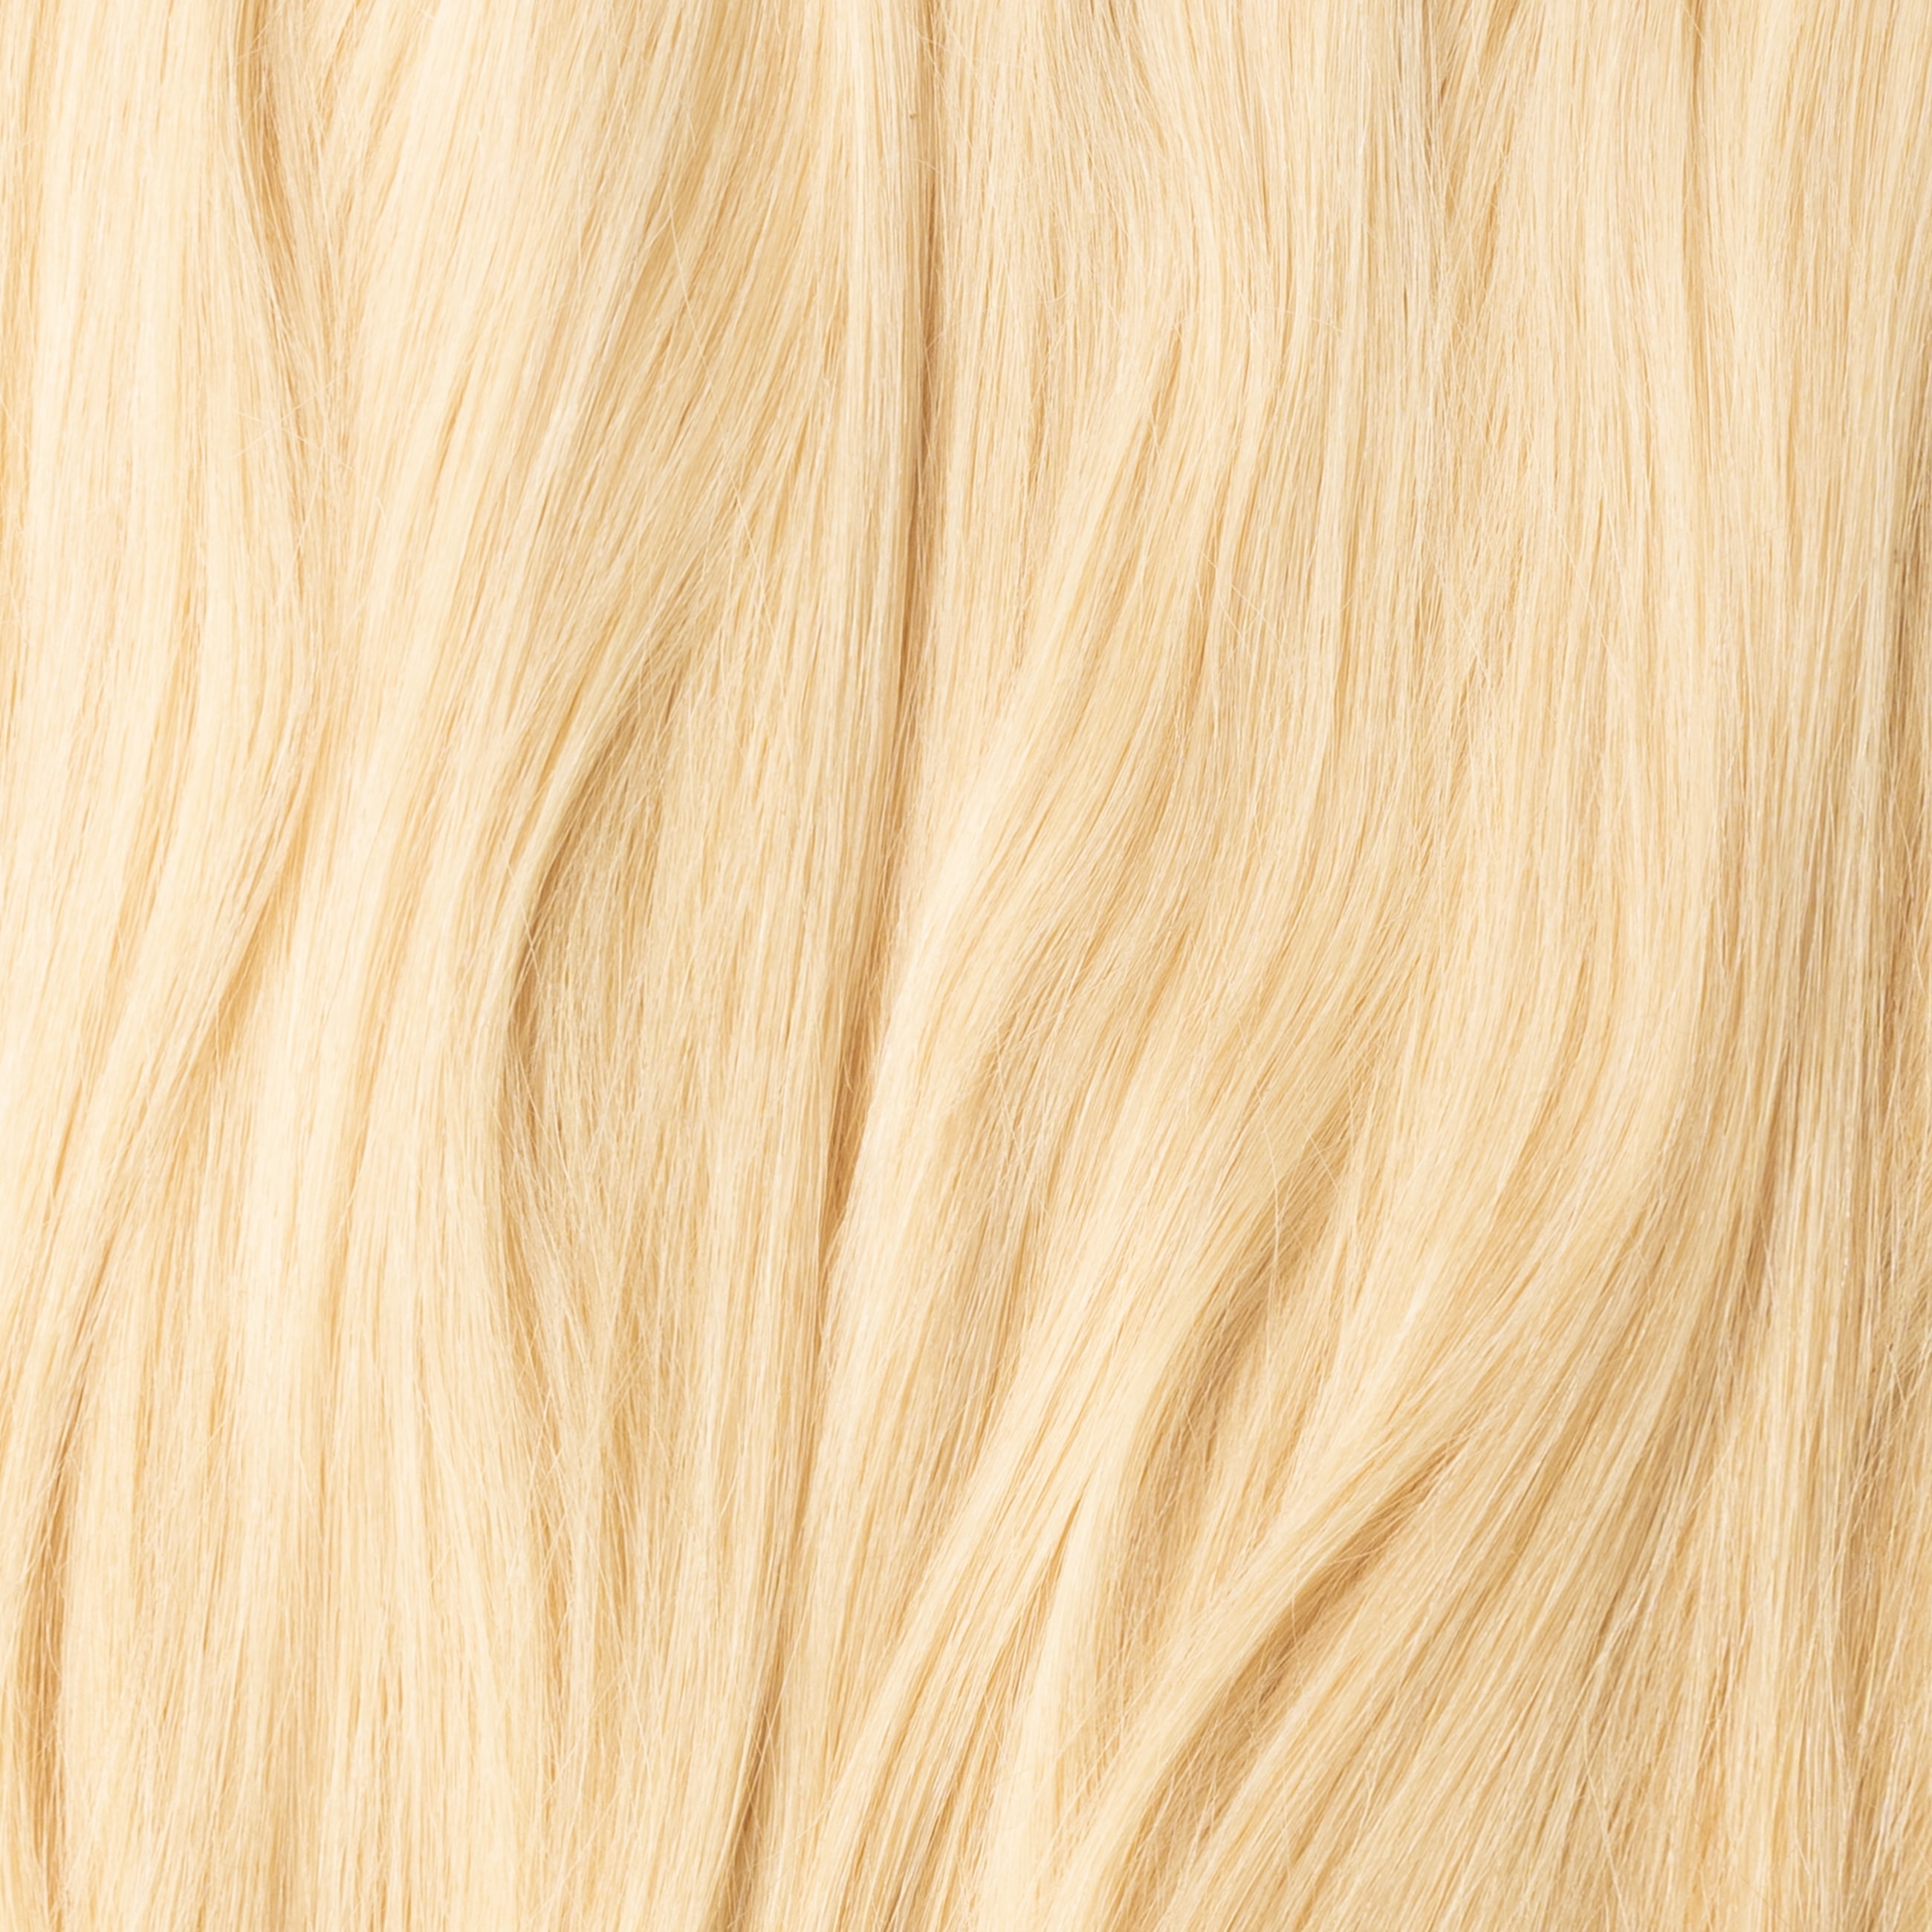 Tressen - Light Golden Blonde 613